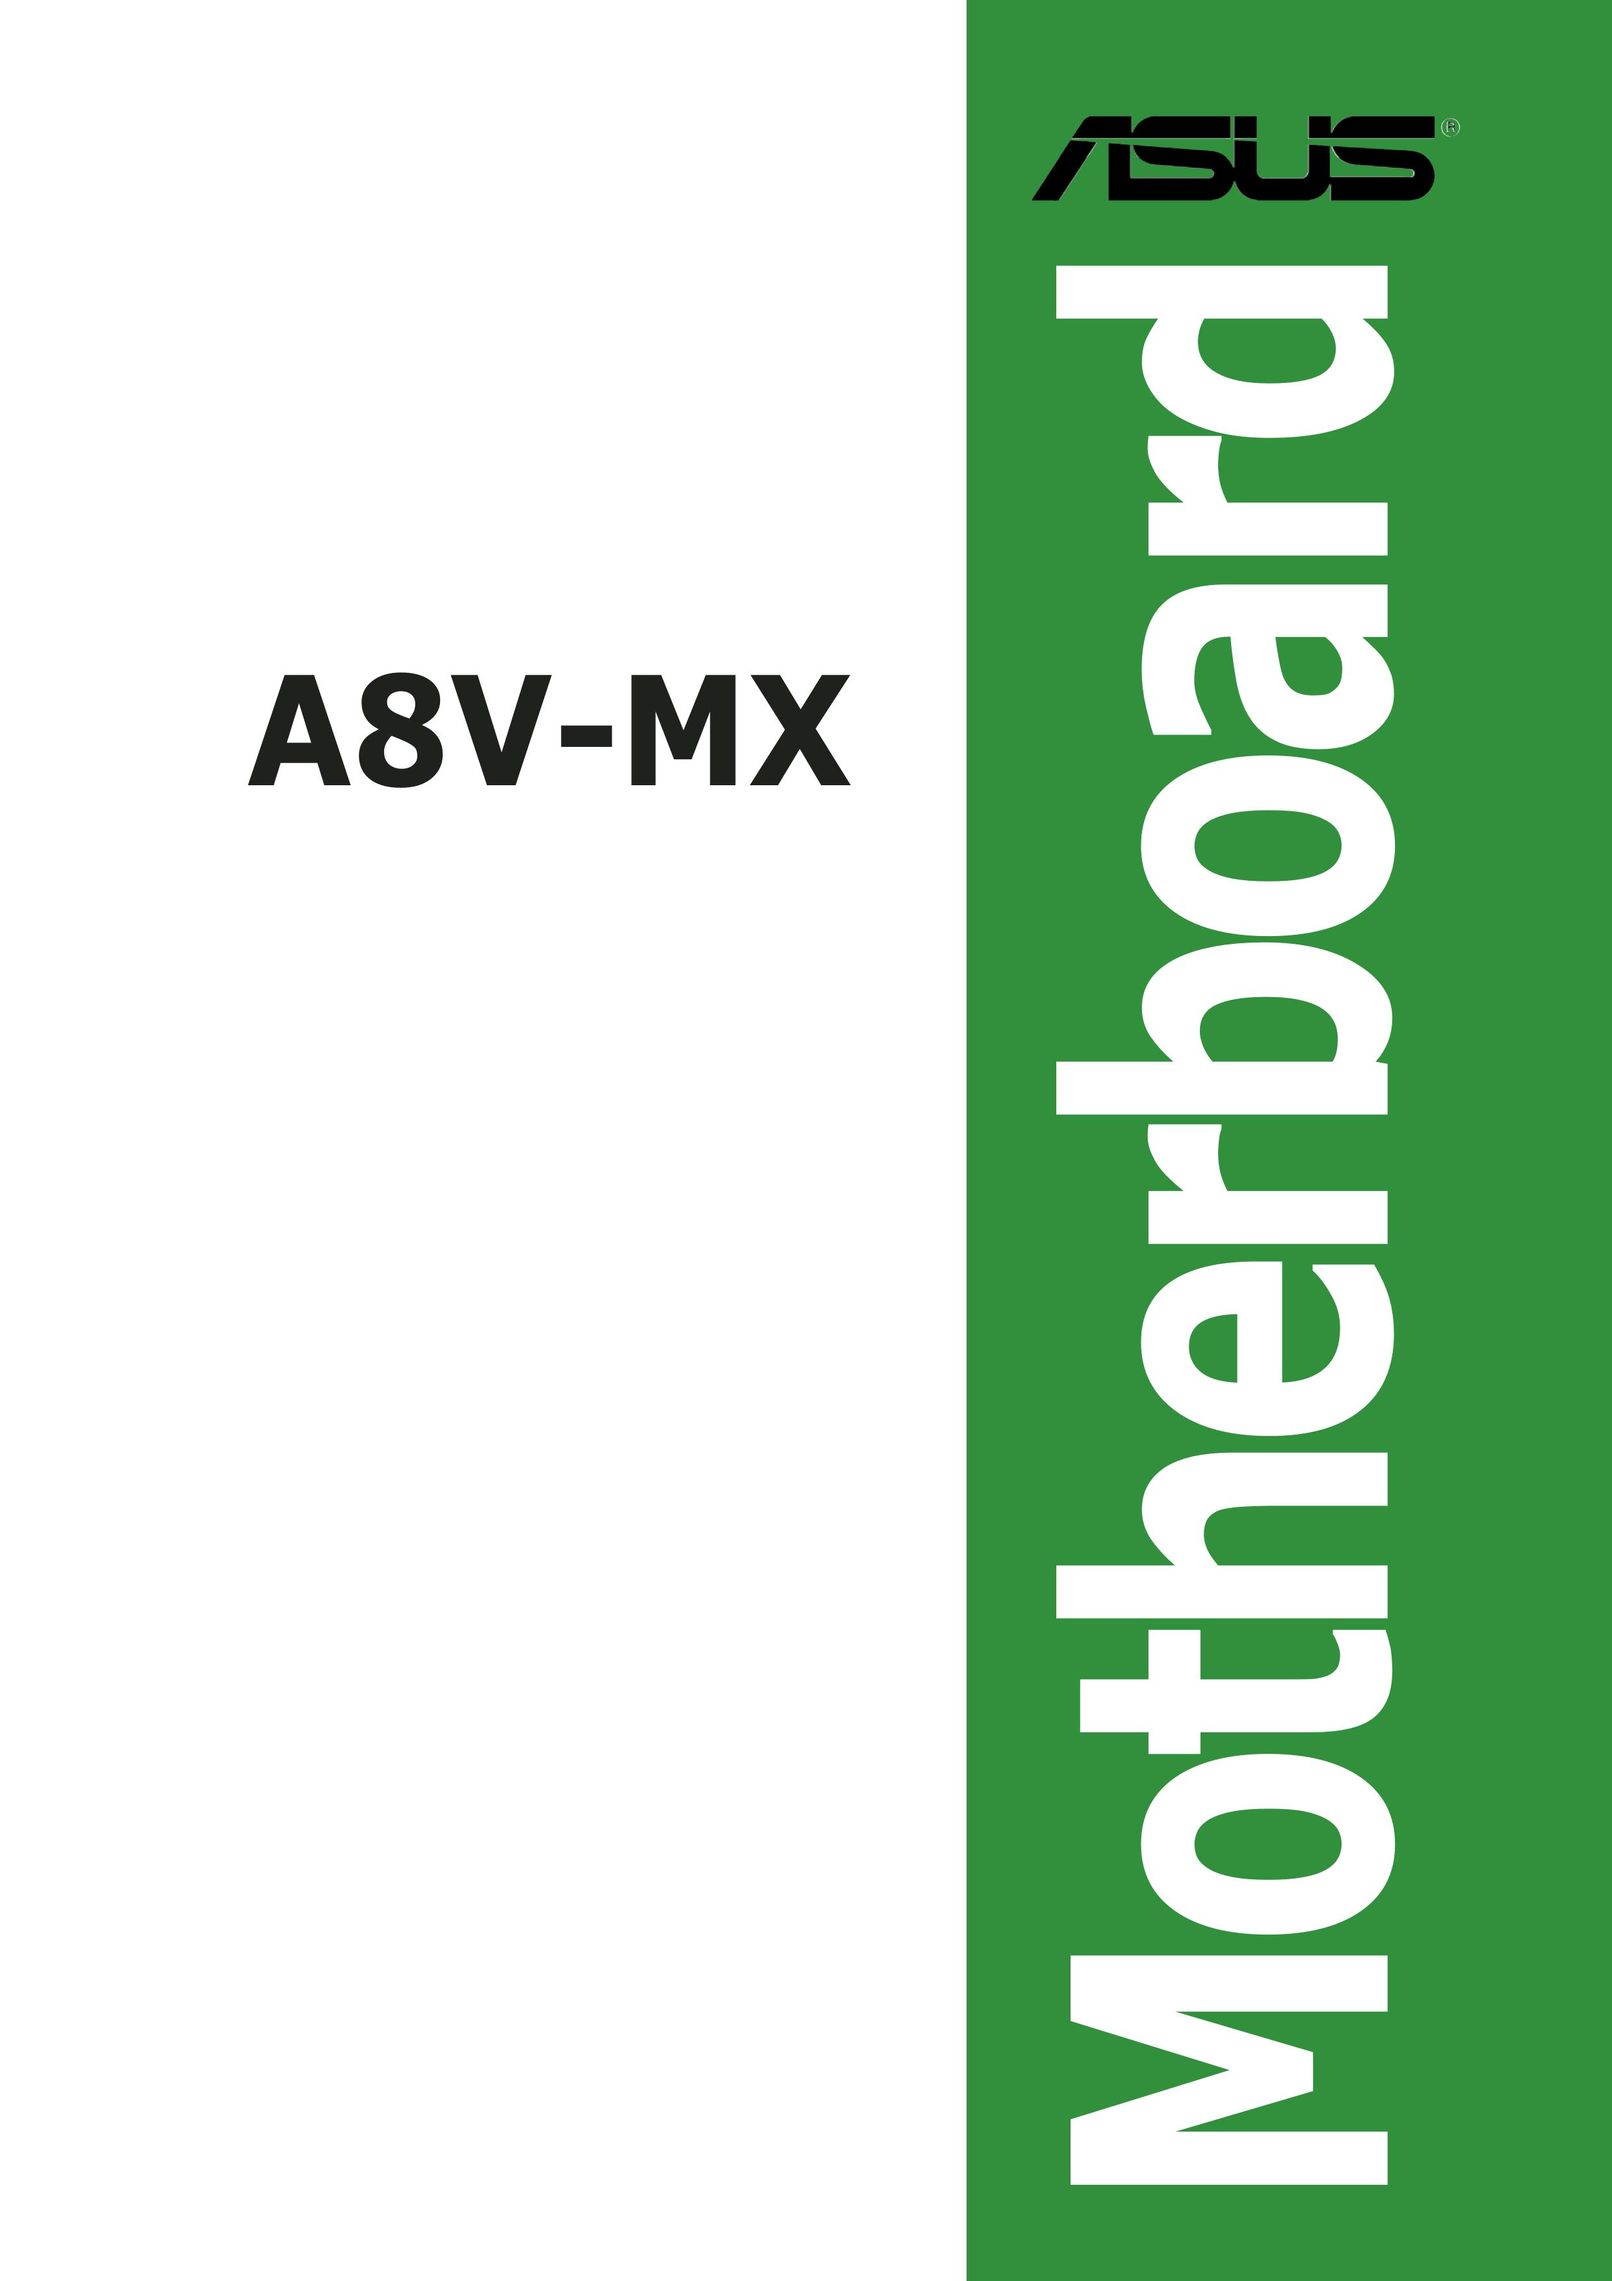 Asus A8V-MX Personal Computer User Manual